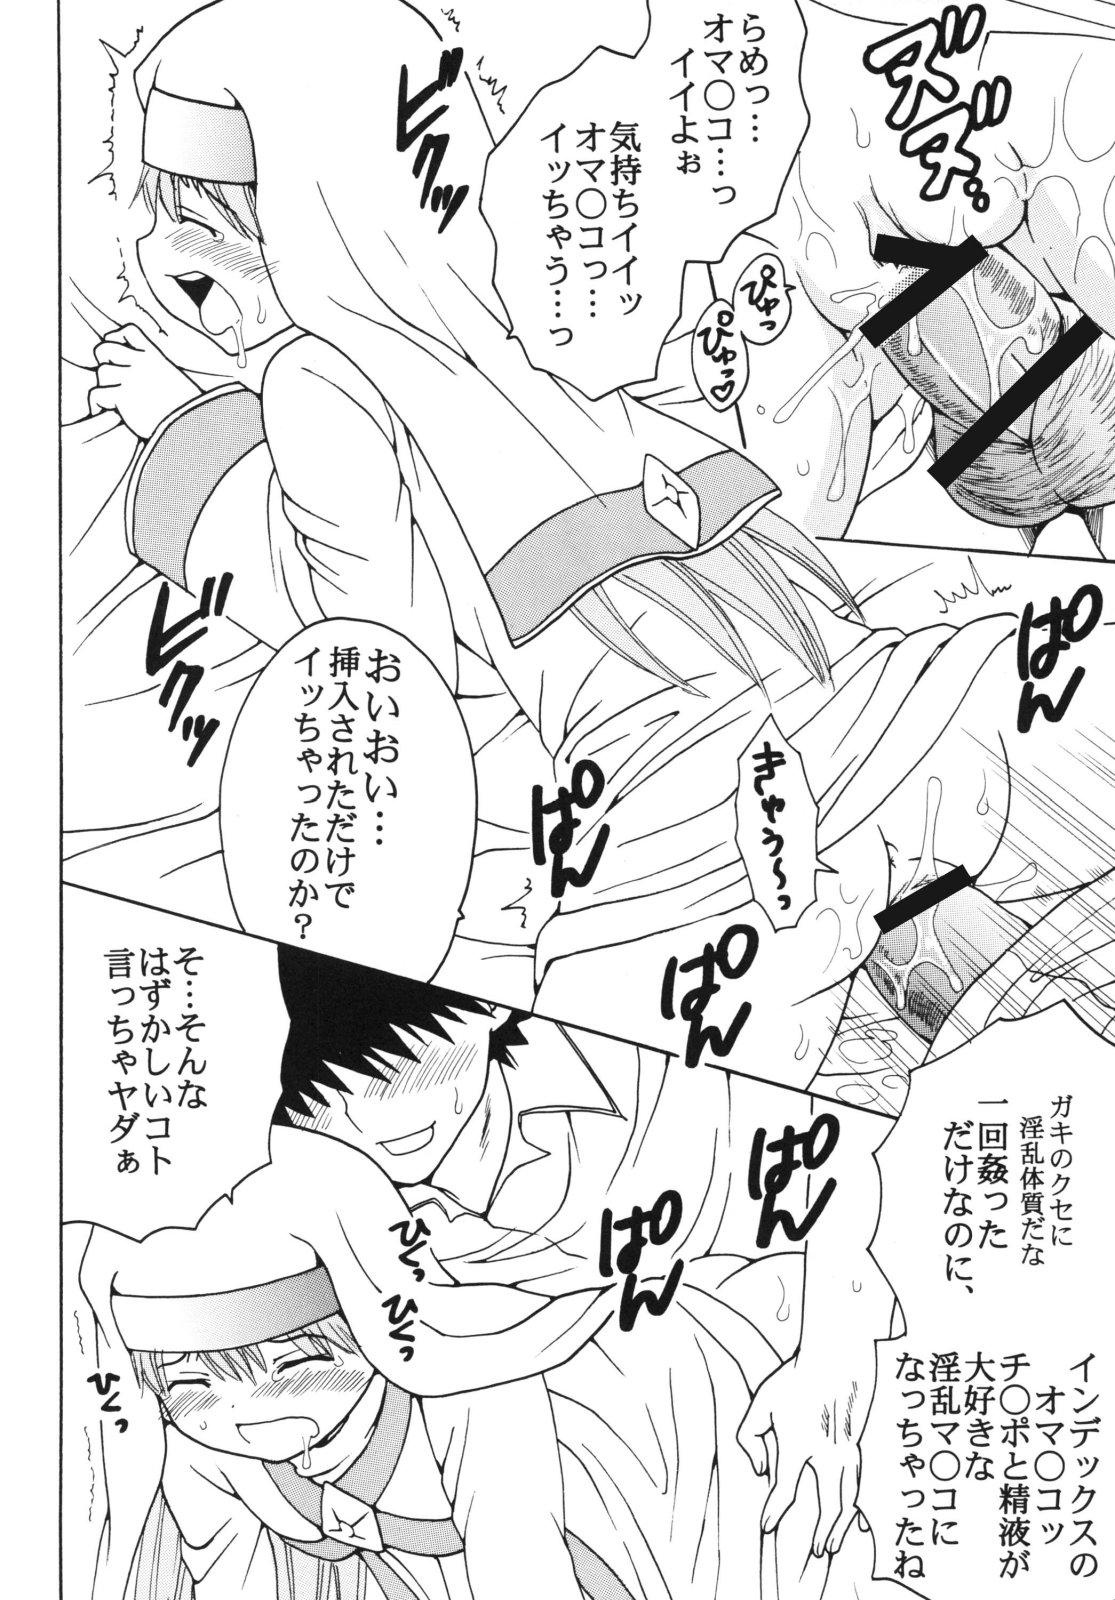 Toaru Otaku no Index #2 43